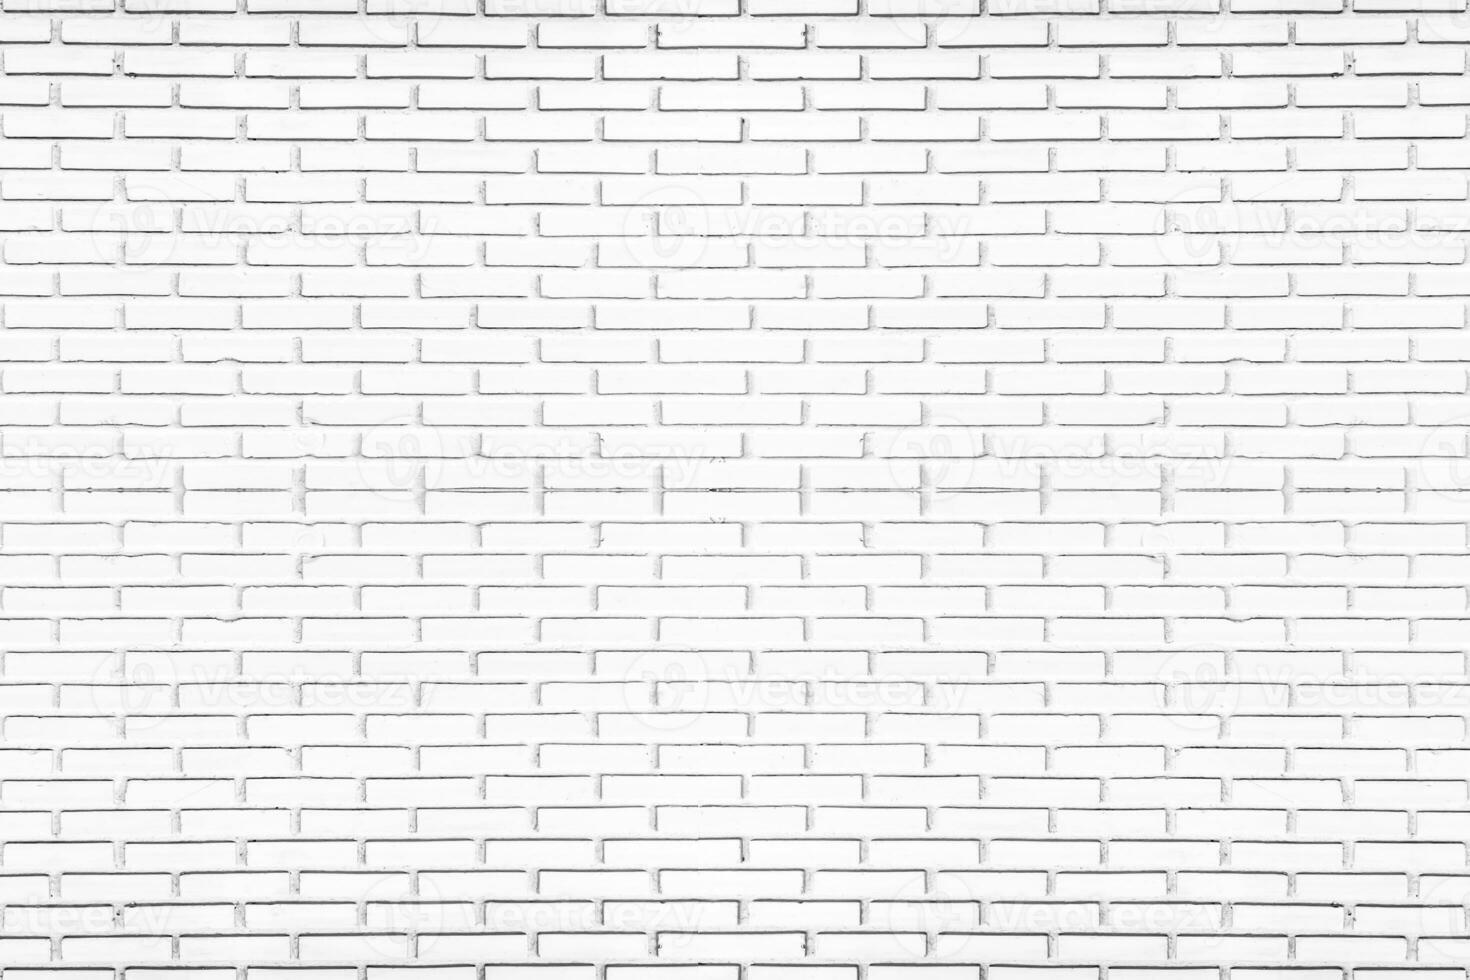 struttura del muro di mattoni bianchi per sfondo o carta da parati. stile vintage astratto della decorazione d'interni. foto